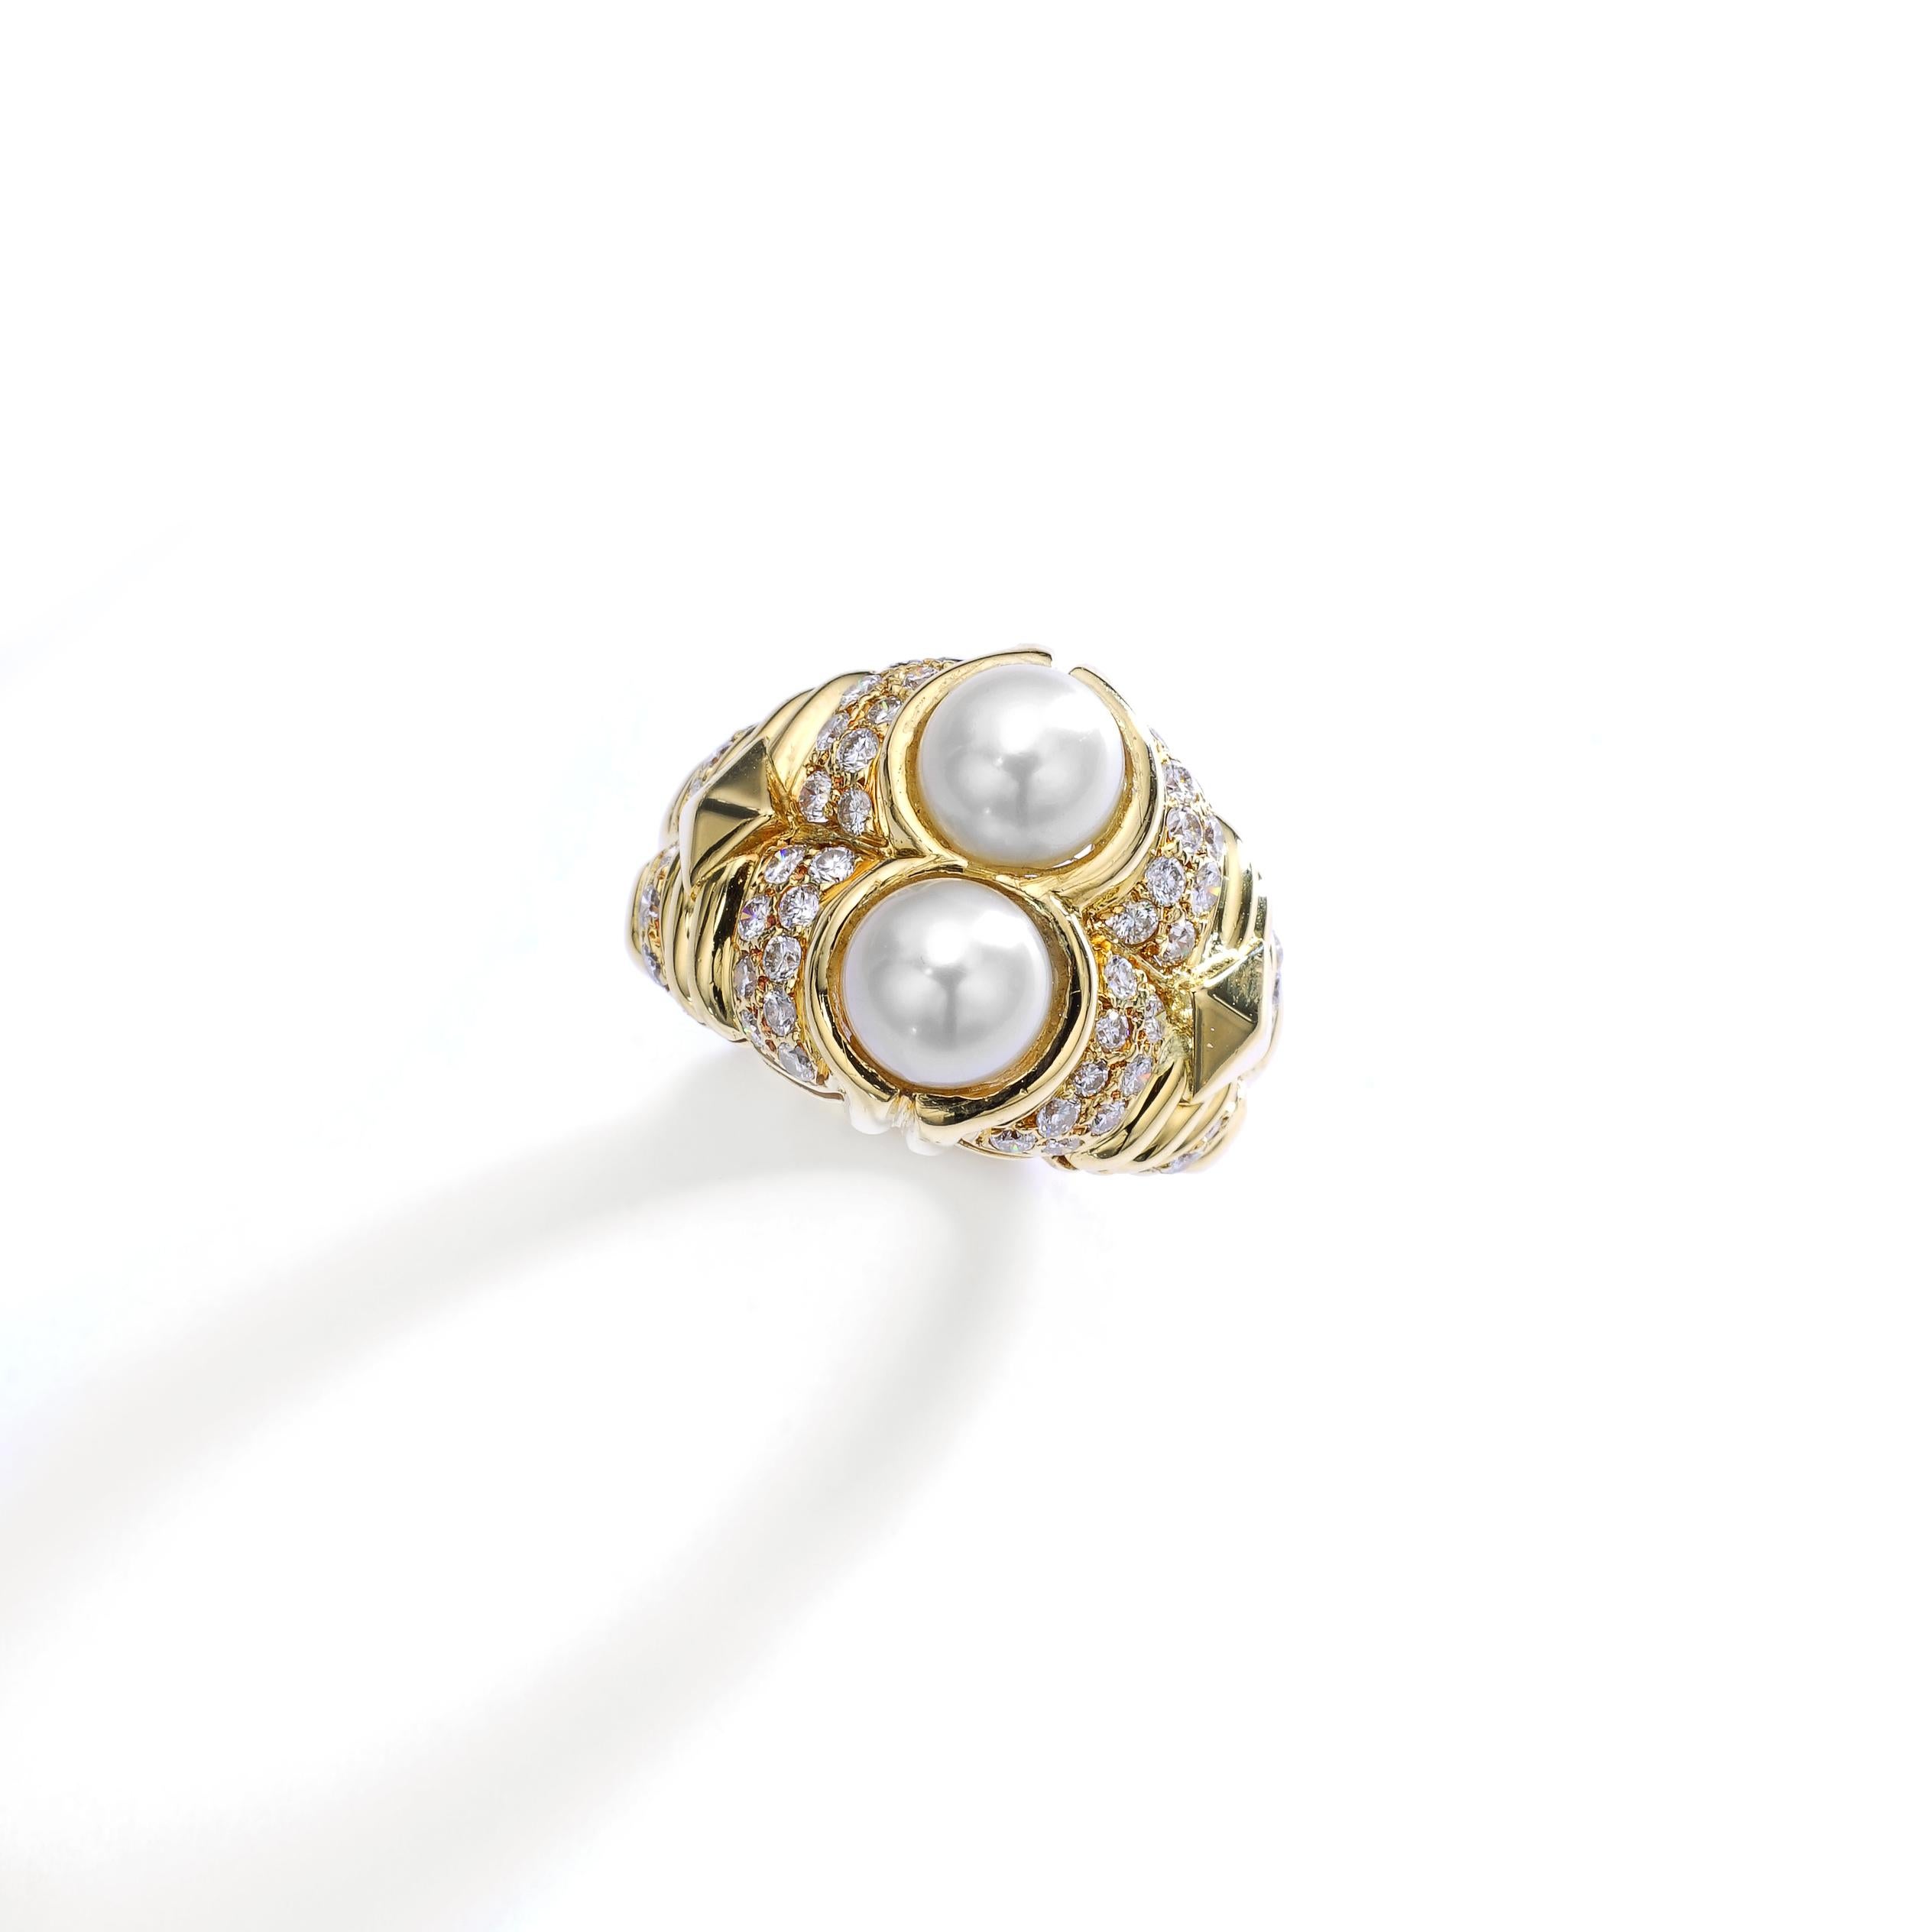 Bulgari Pearl and Diamond Gold Ring.
Circa 1990. 
Signed Bulgari, Italian marks.
Ring size: 6 1/2 US.